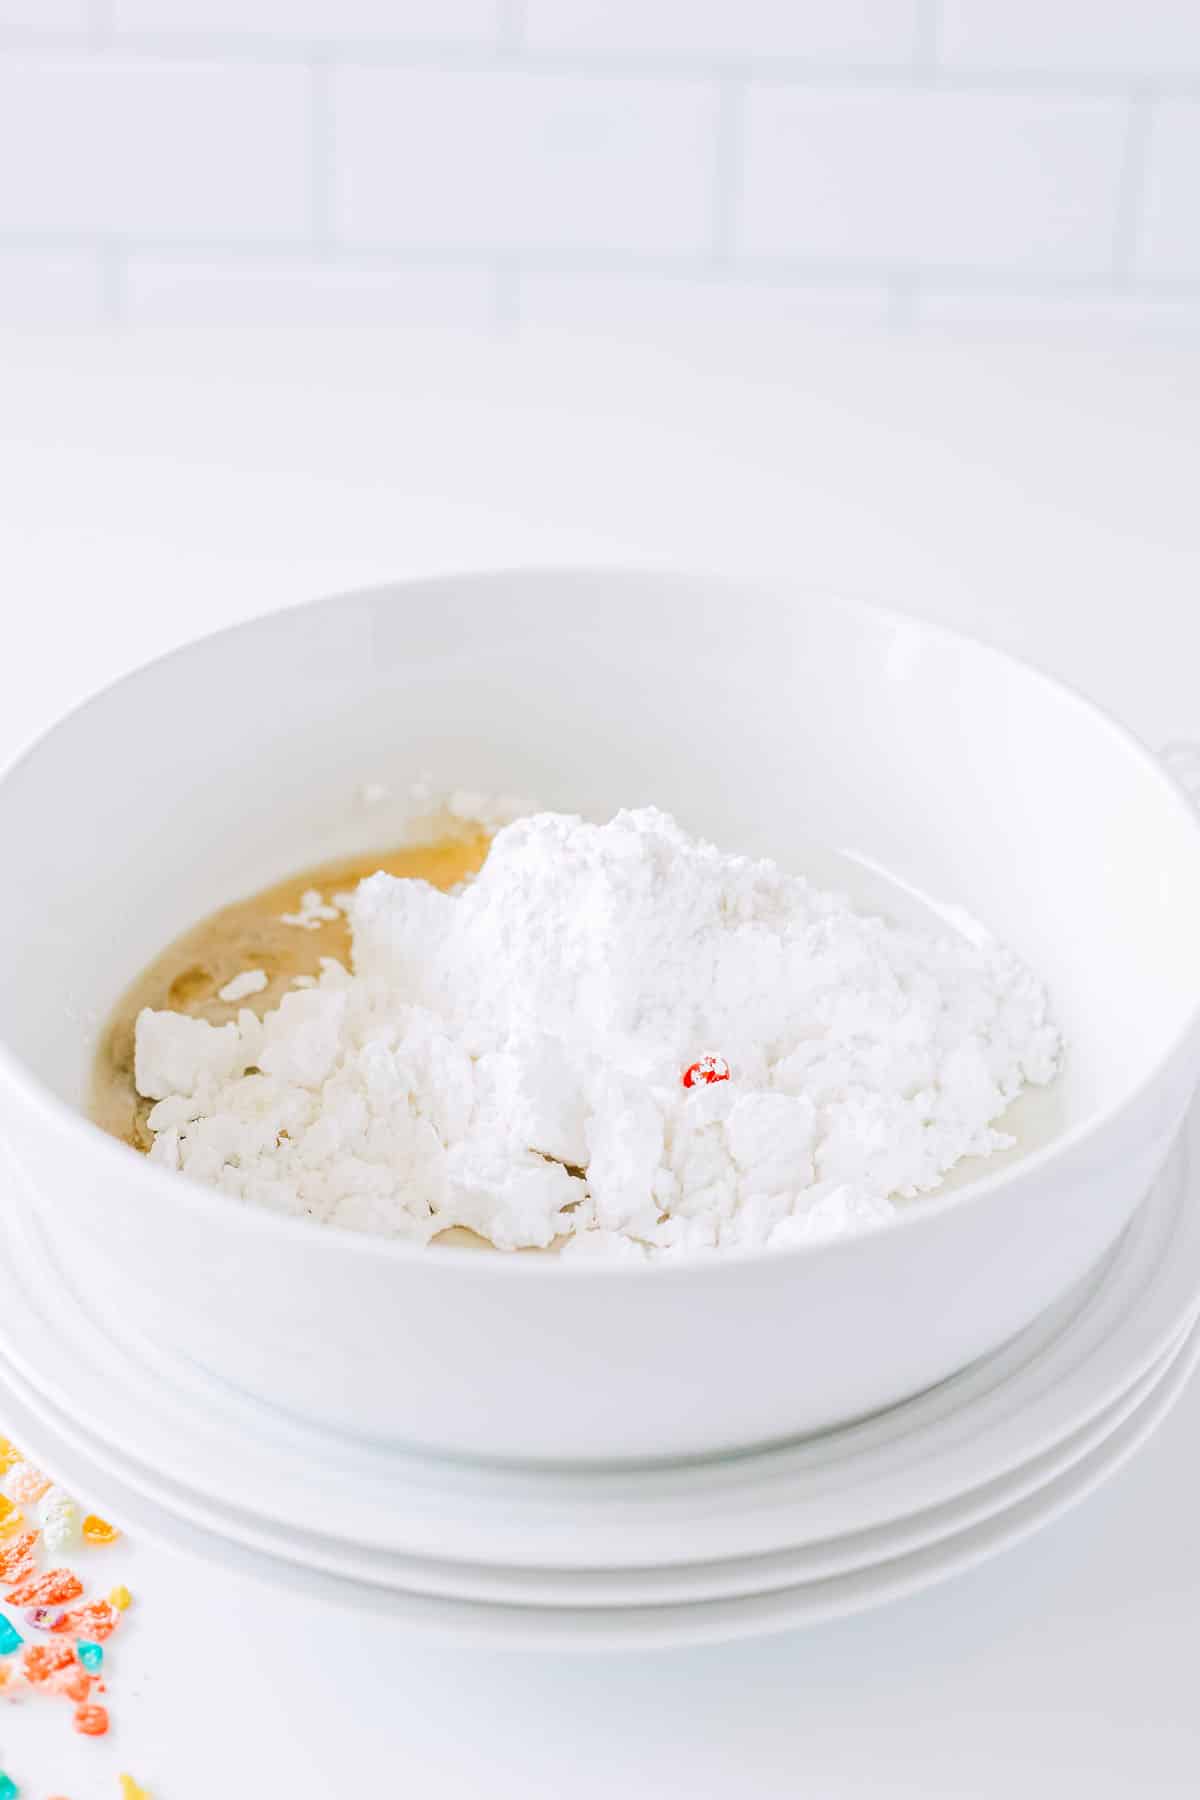 Powdered sugar in a bowl.